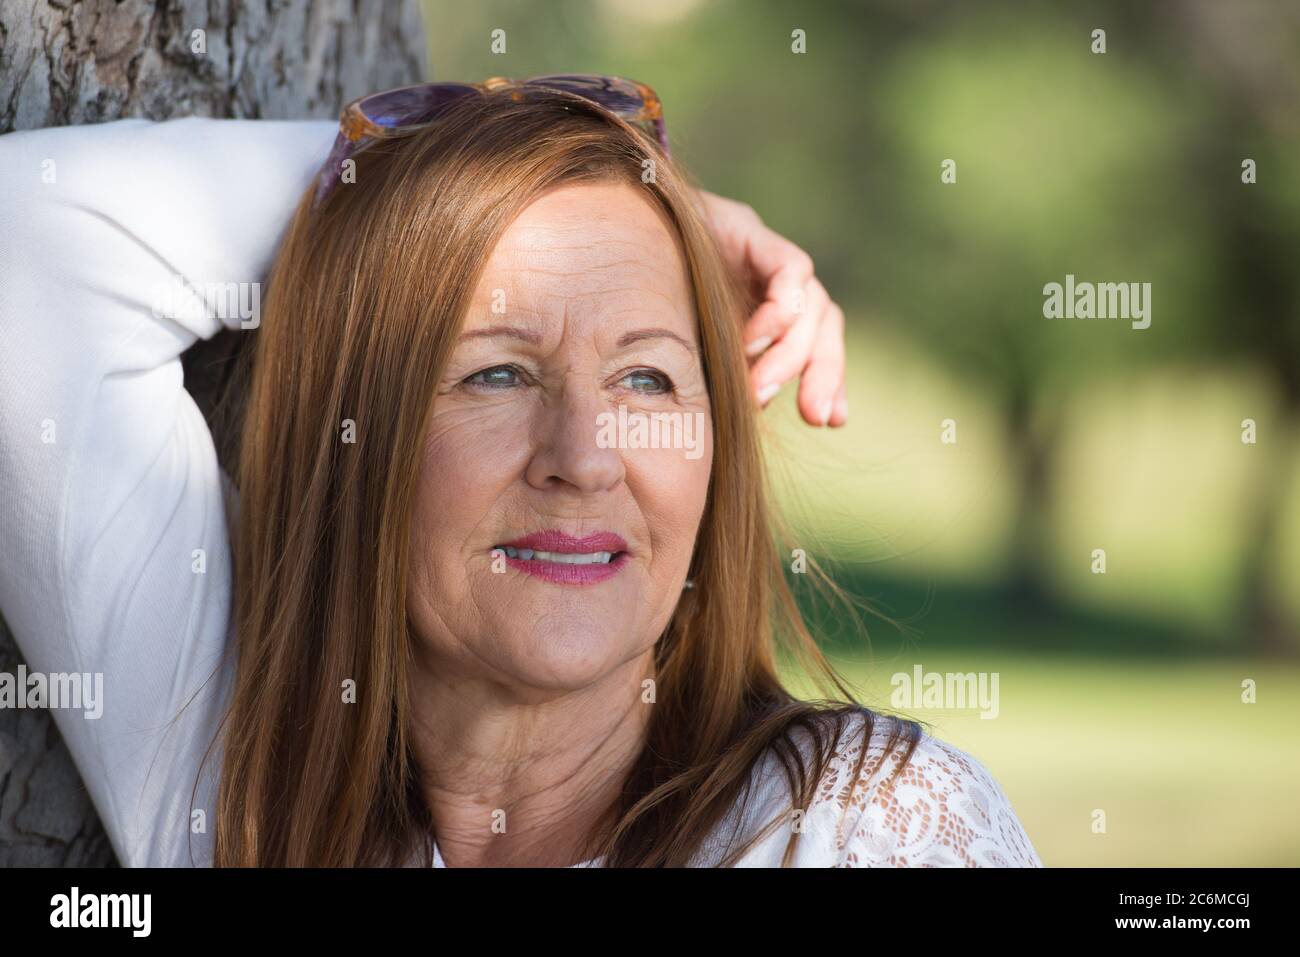 Portrait Attraktive reife Frau mit langen Haaren posiert glücklich entspannt, nachdenklich und zuversichtlich im Freien im Park, freundlich lächelnd. Stockfoto